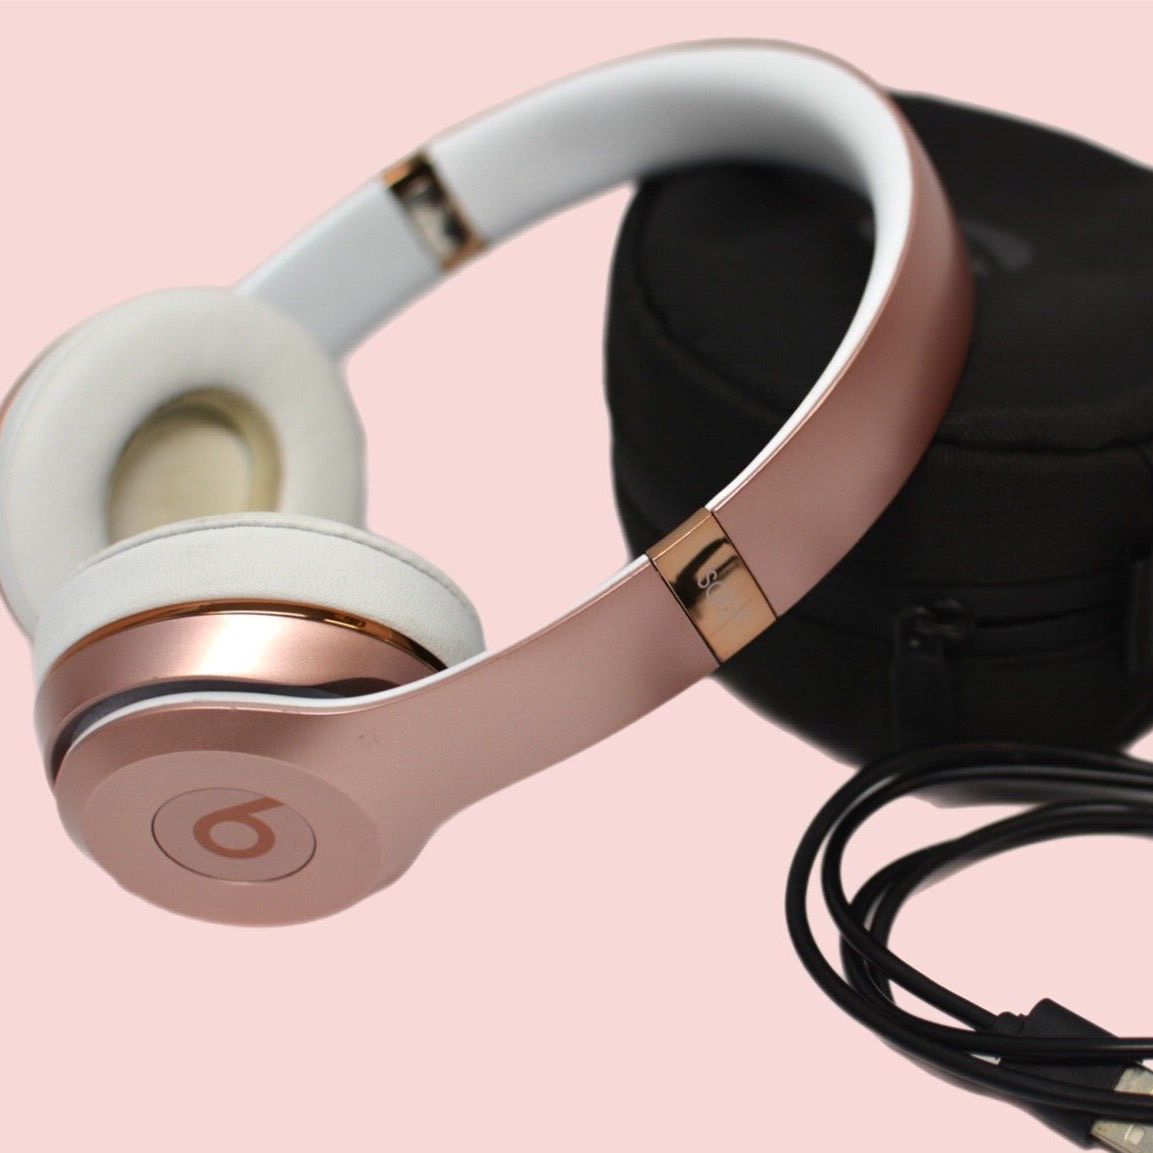 Beats by Dr. Dre Beats Solo3 Wireless On-Ear Headphones - Rose